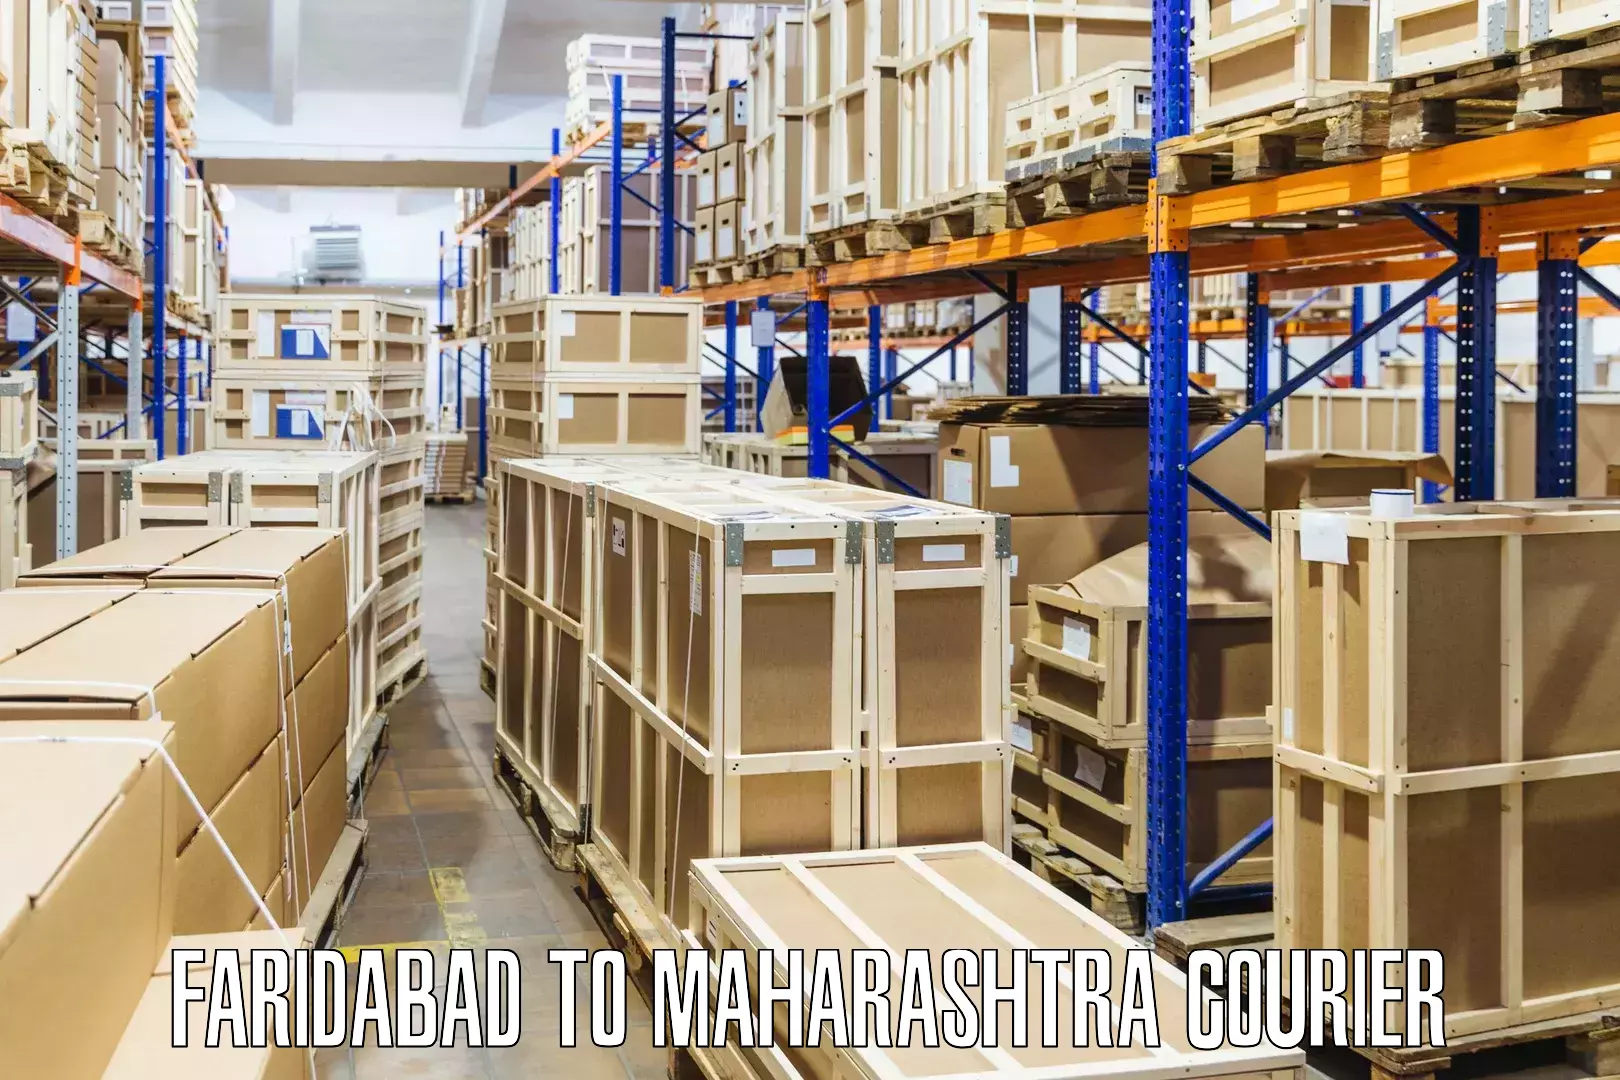 Full-service courier options Faridabad to Navi Mumbai